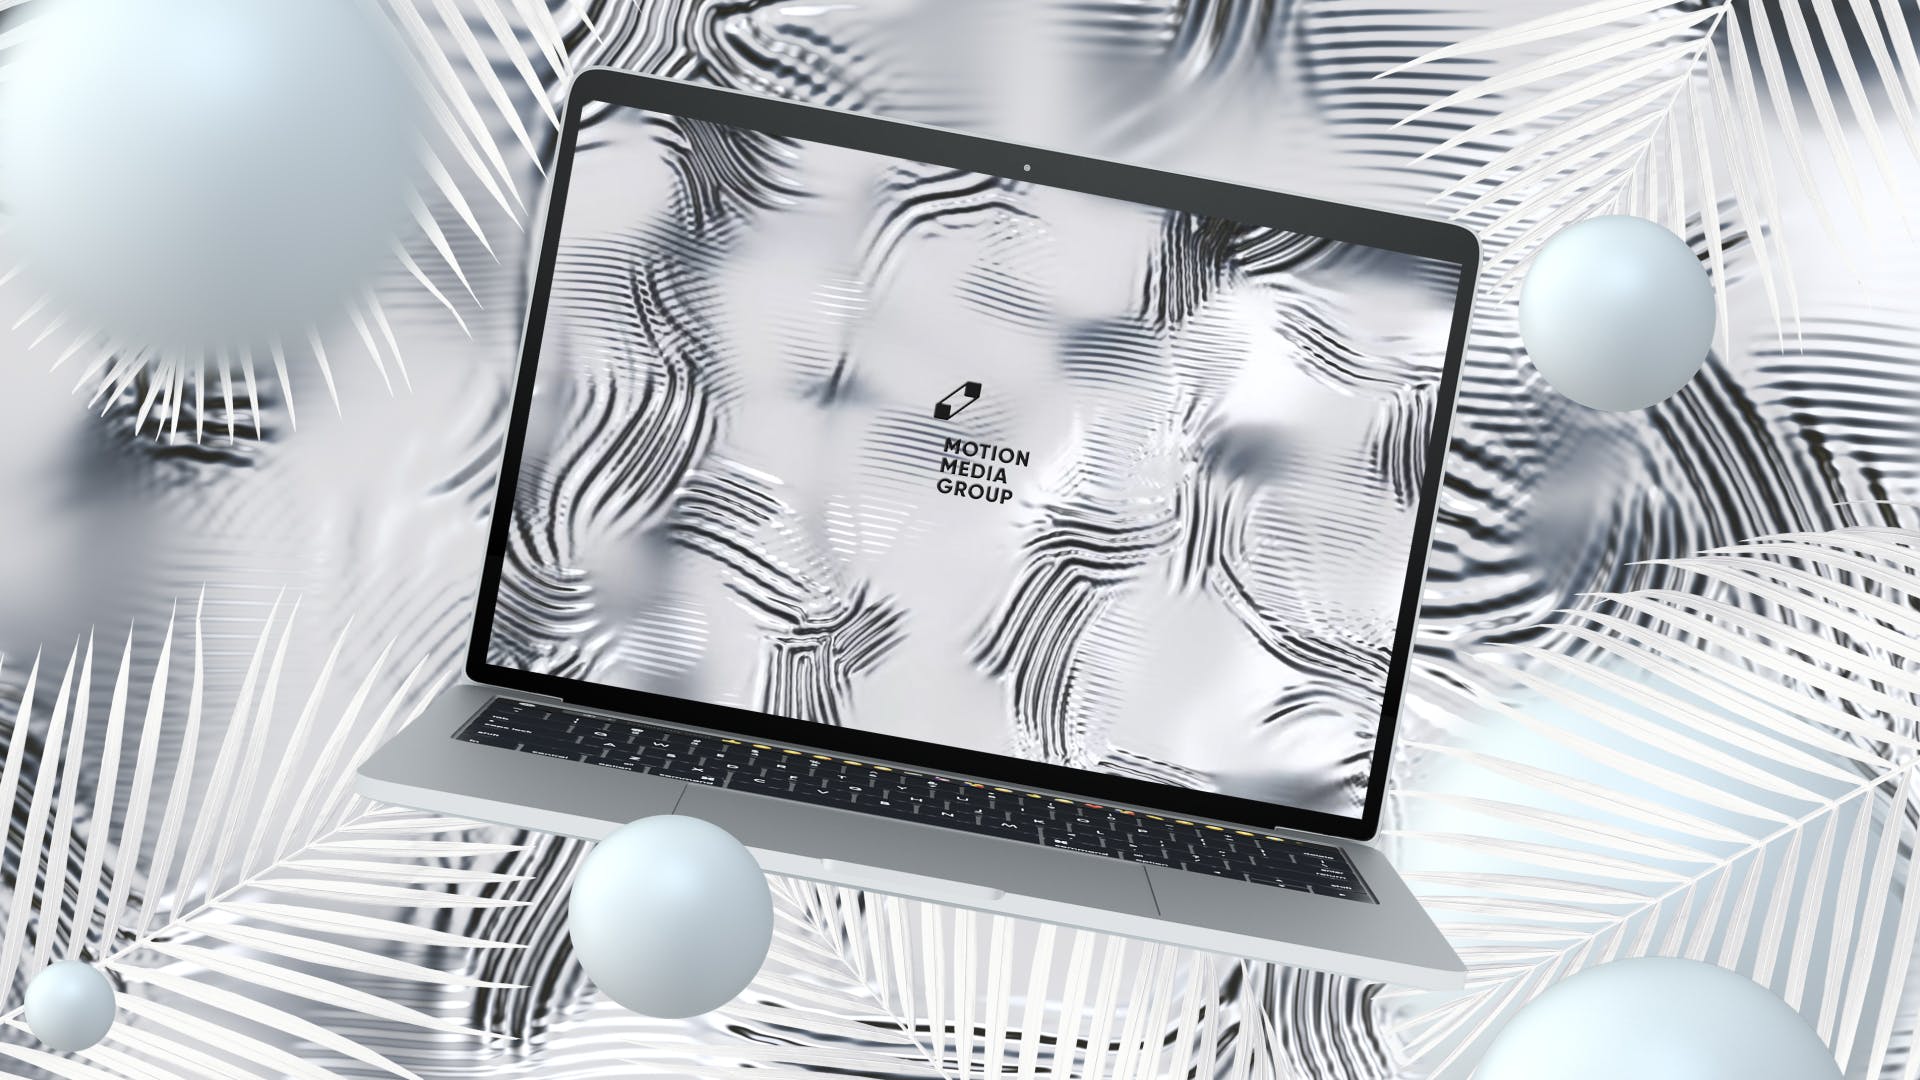 优雅时尚风格3D立体风格笔记本电脑屏幕预览素材库精选样机 10 Light Laptop Mockups插图(3)